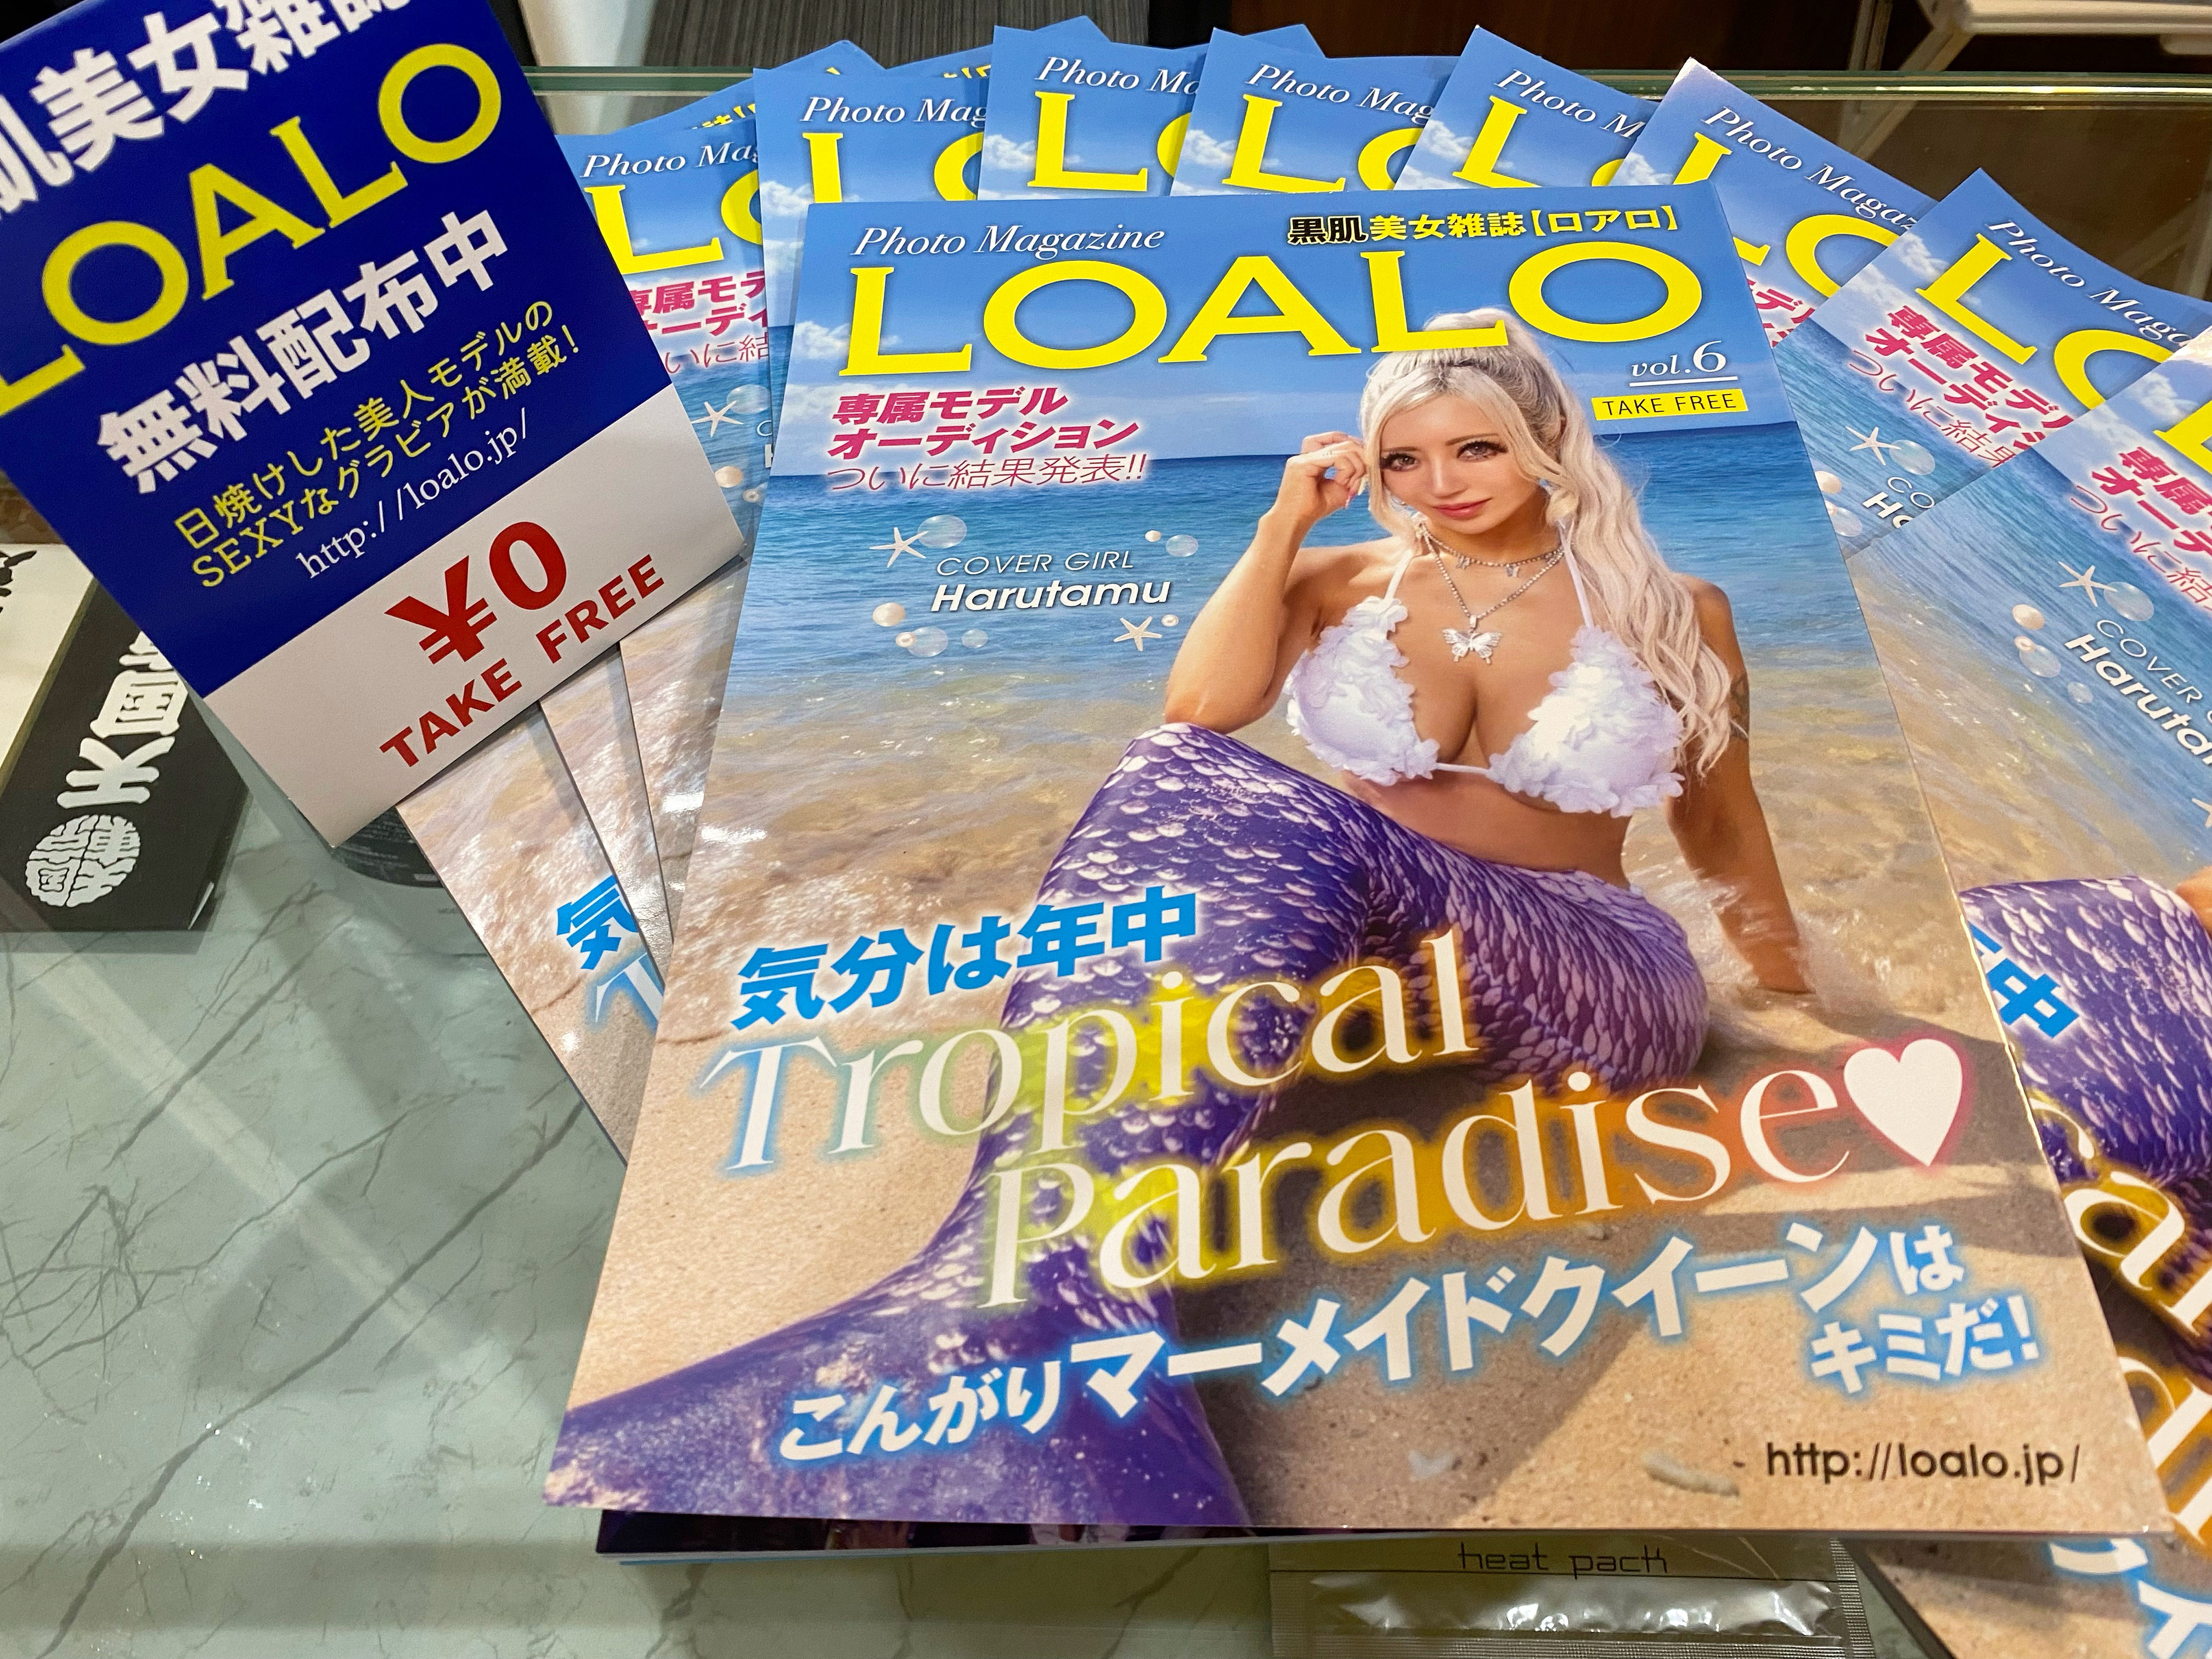 黒肌美女雑誌【LOALO】vol.6 到着しました‼️無料です🉐